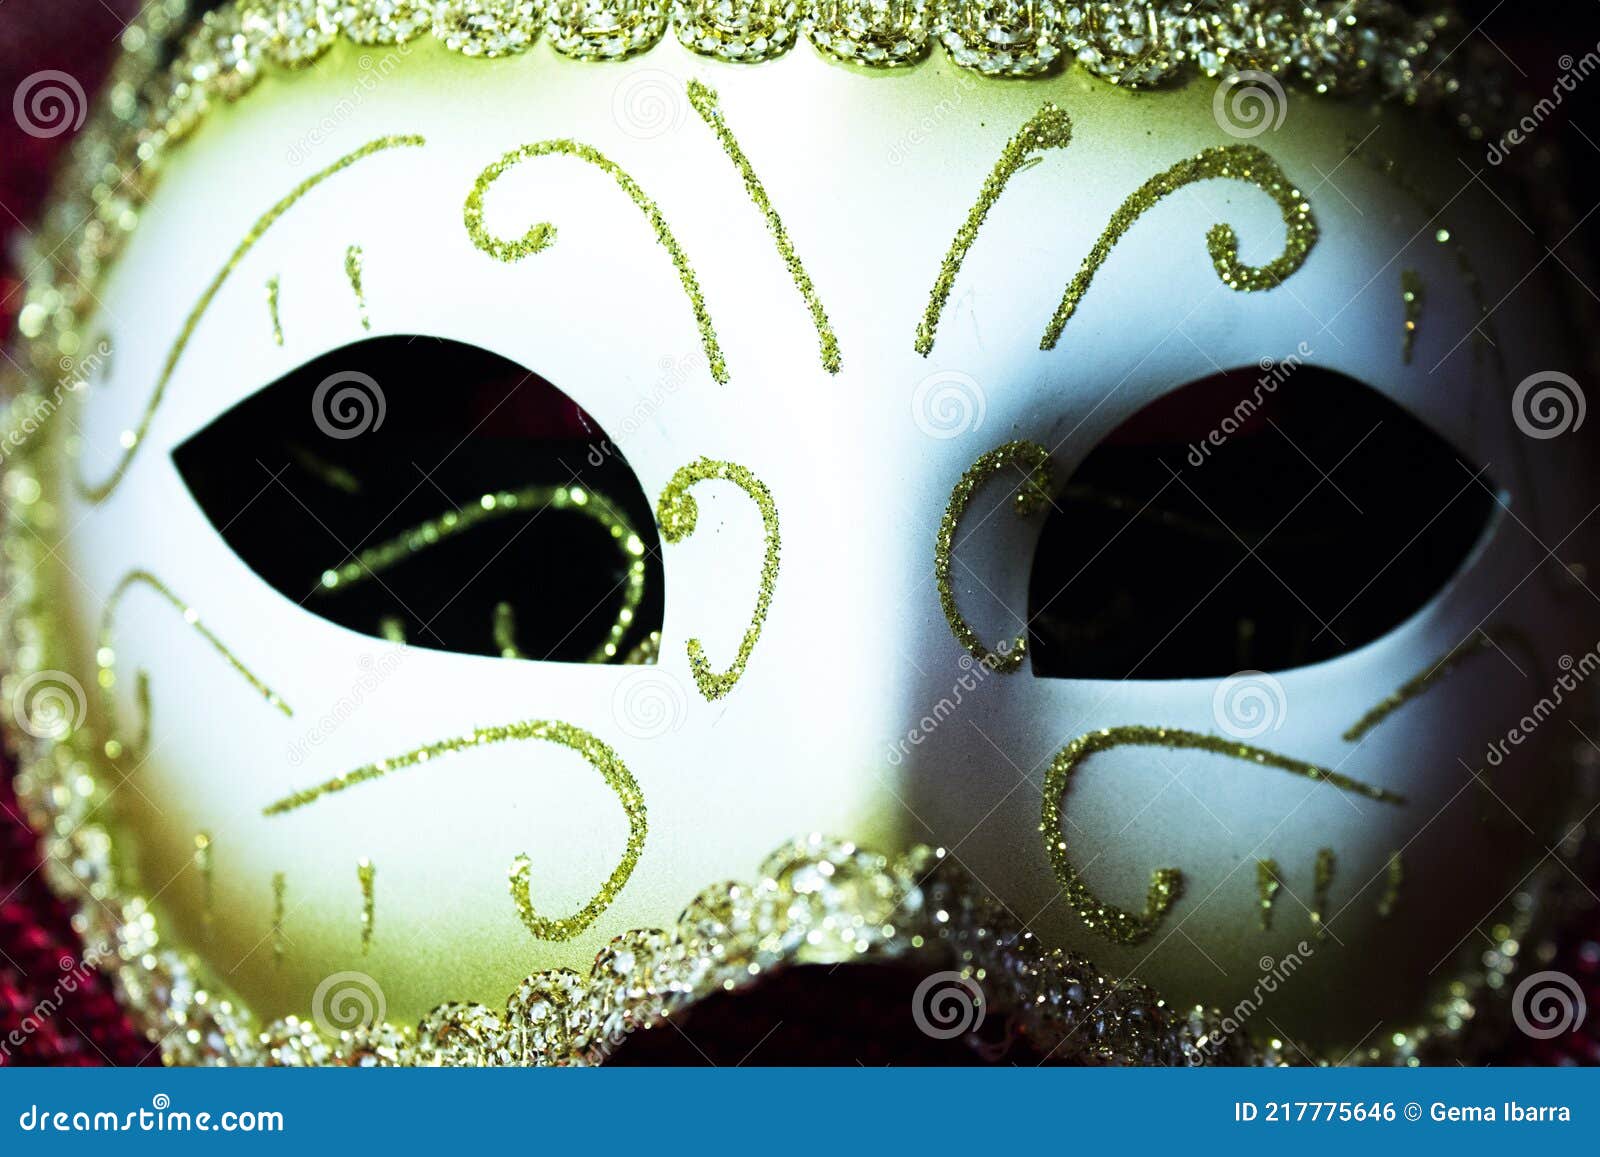 Máscara De Mujer Para Vestir. Color Beige Y Dorado Foto de archivo - Imagen  de noche, lujo: 217775646